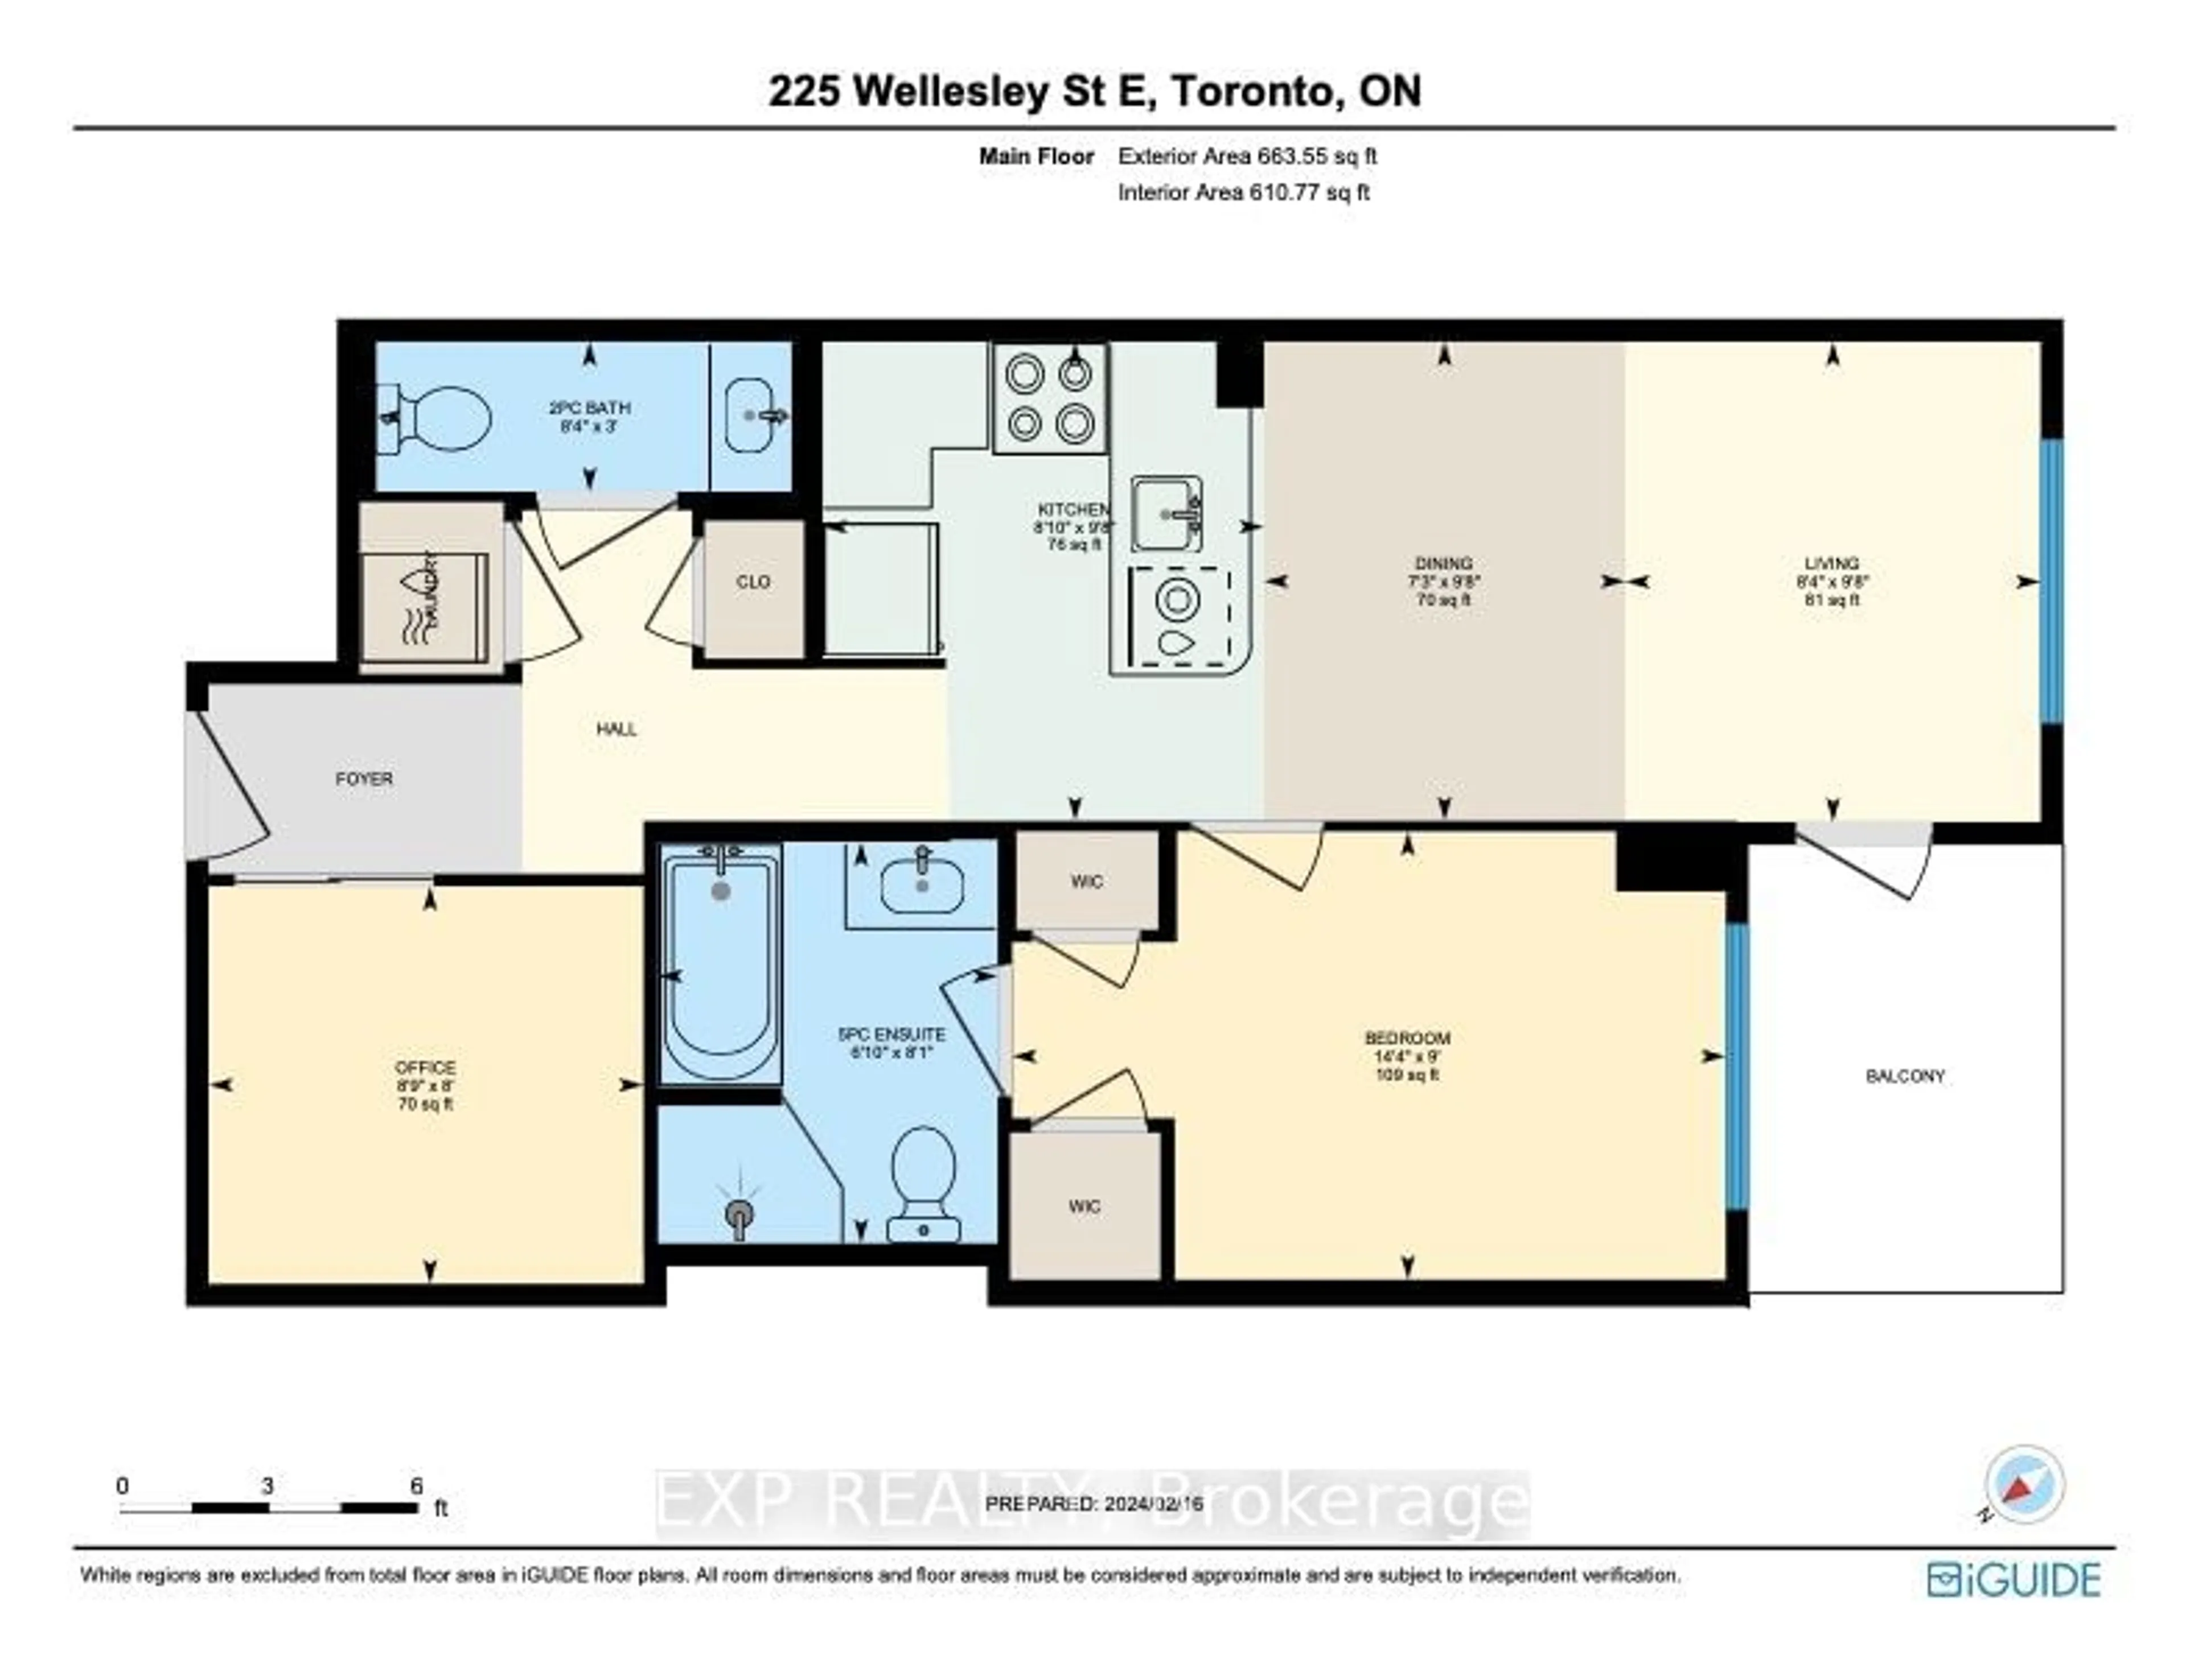 Floor plan for 225 Wellesley St #407, Toronto Ontario M4X 1X8